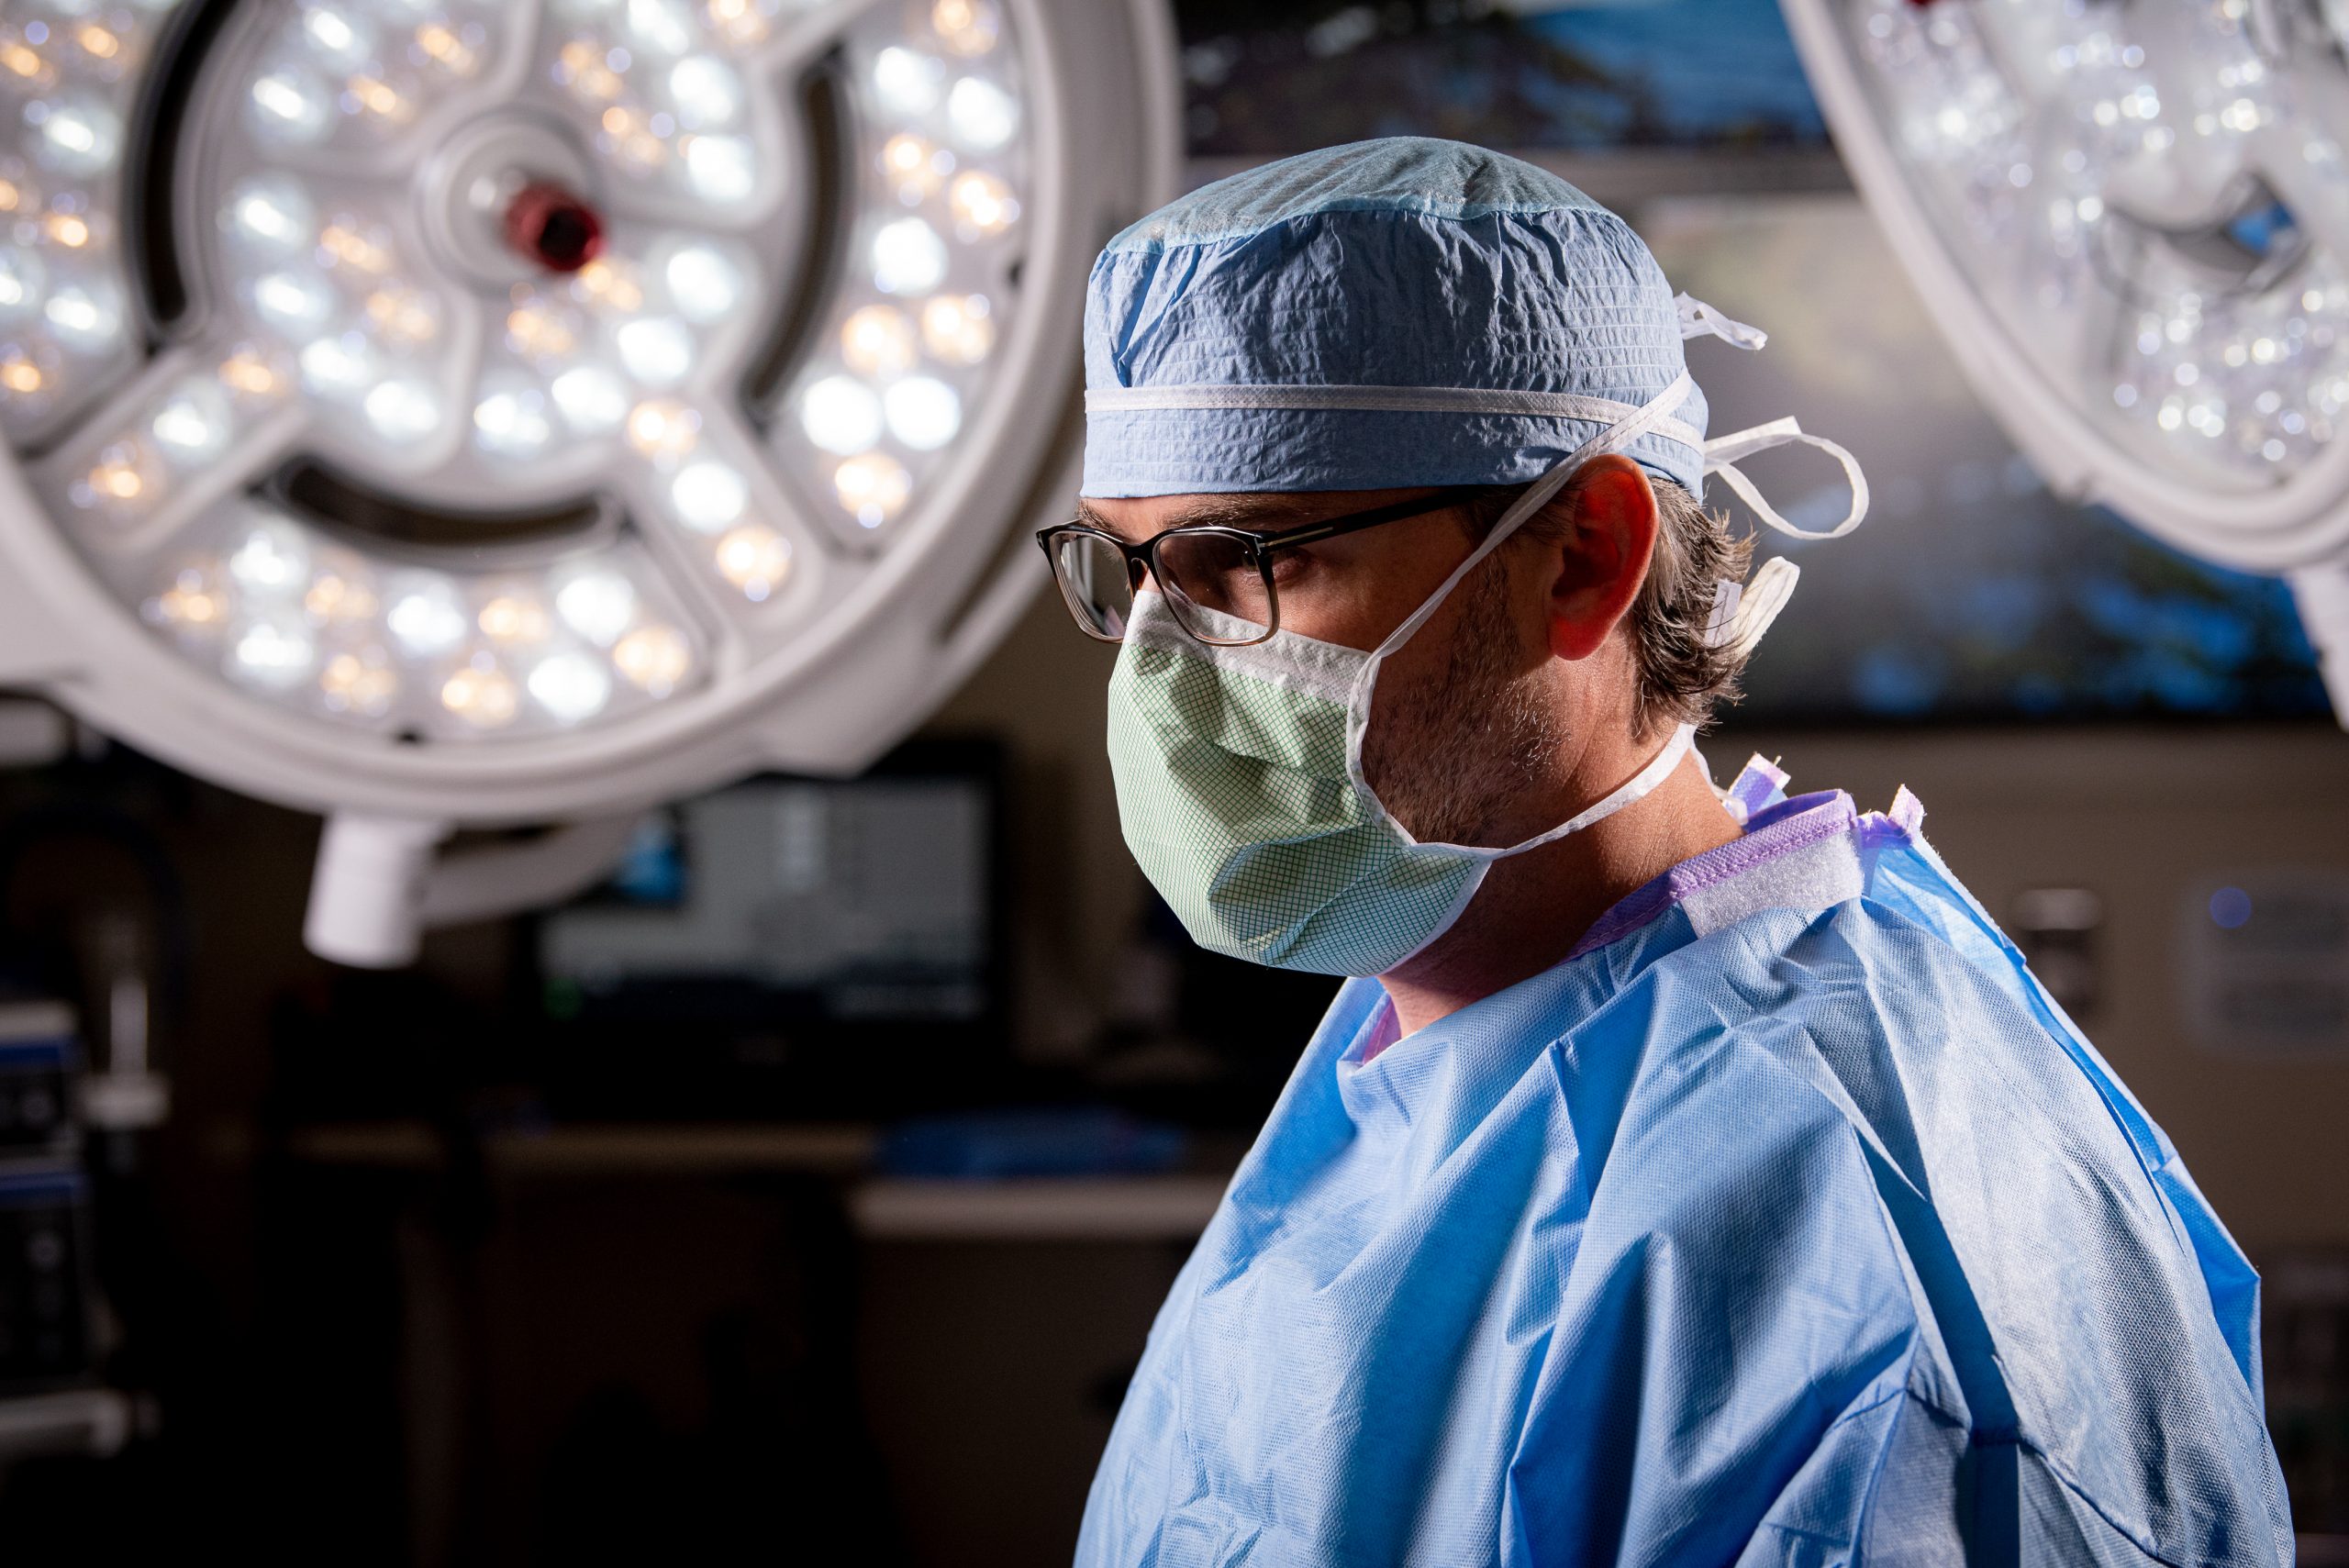 Dr. Koonce in medical scrubs